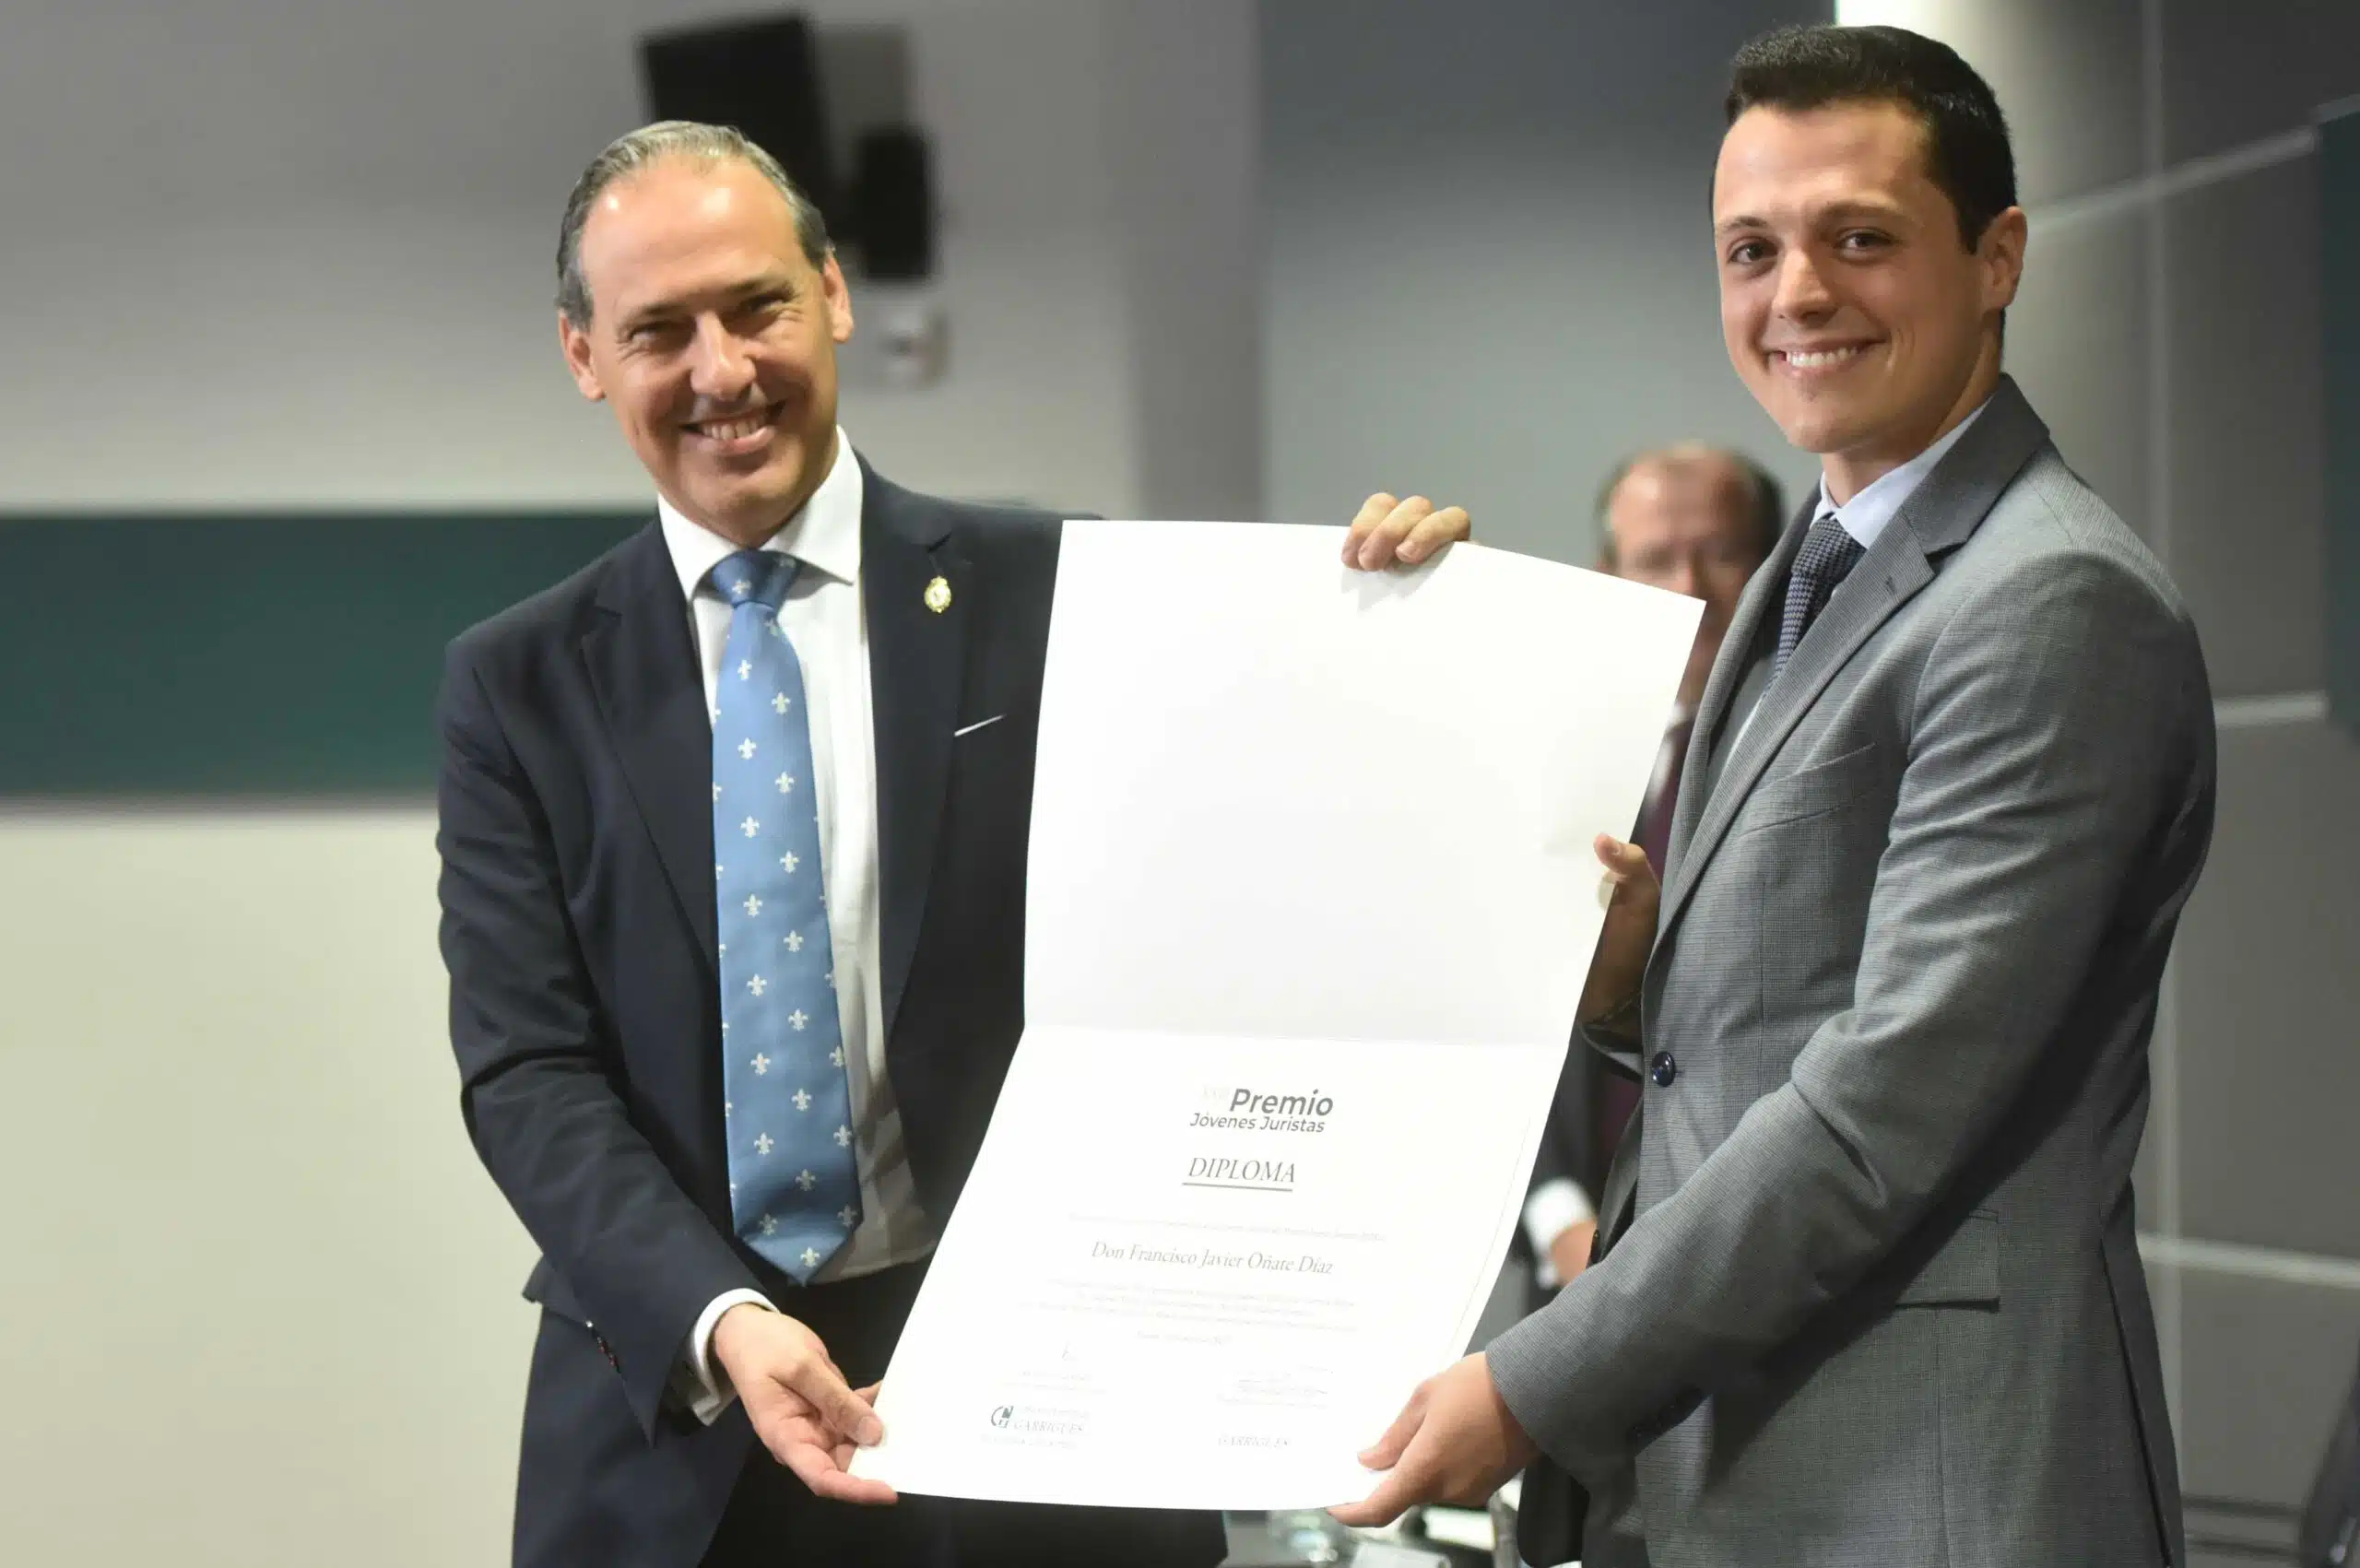 Francisco Javier Oñate Díaz, alumno del grado de Derecho de ISDE, recibe el primer premio en la XXIII edición del Premio Jóvenes Juristas del Centro de Estudios Garrigues